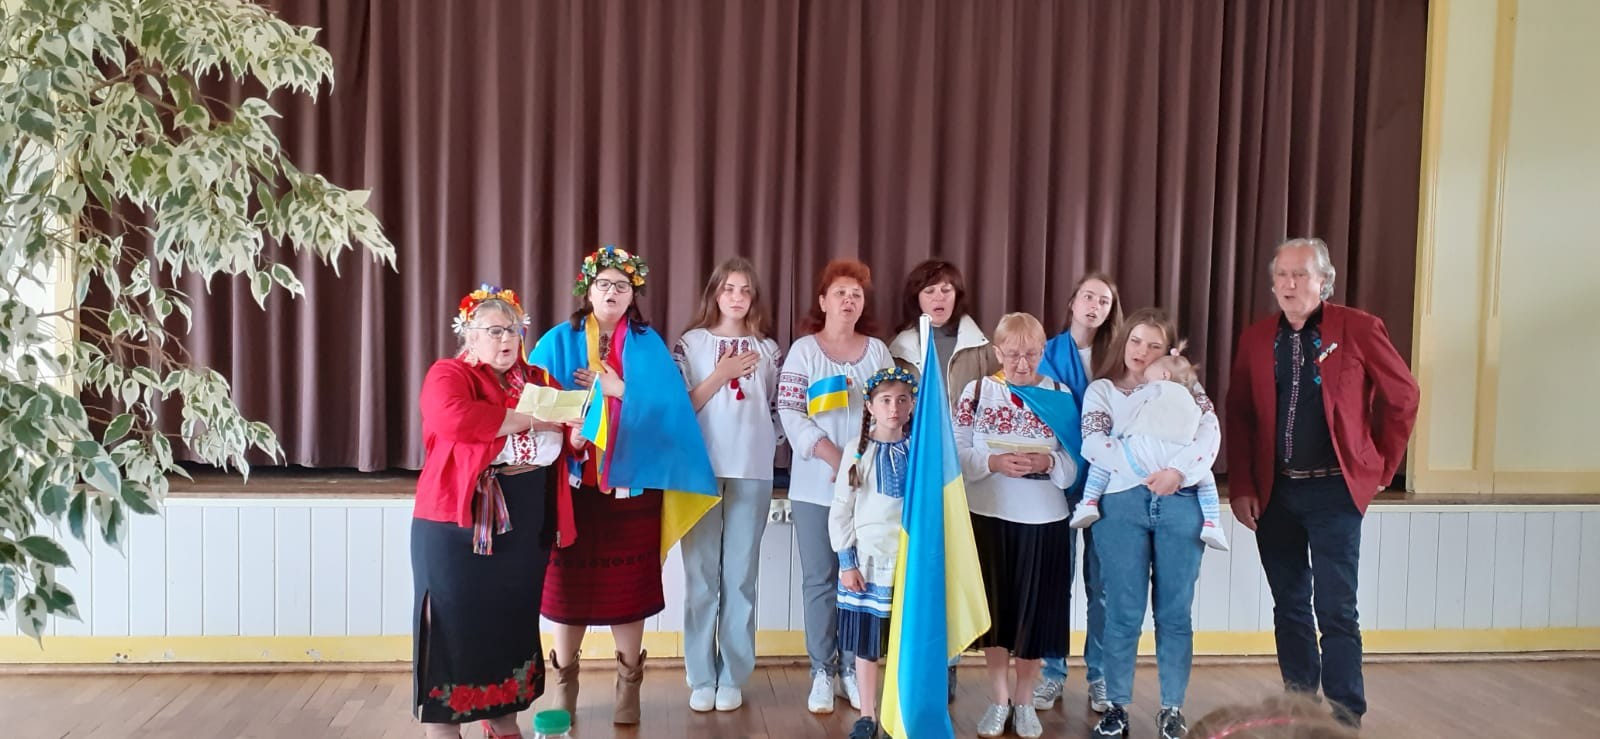 Délégation ukrainienne chantant leur hymne